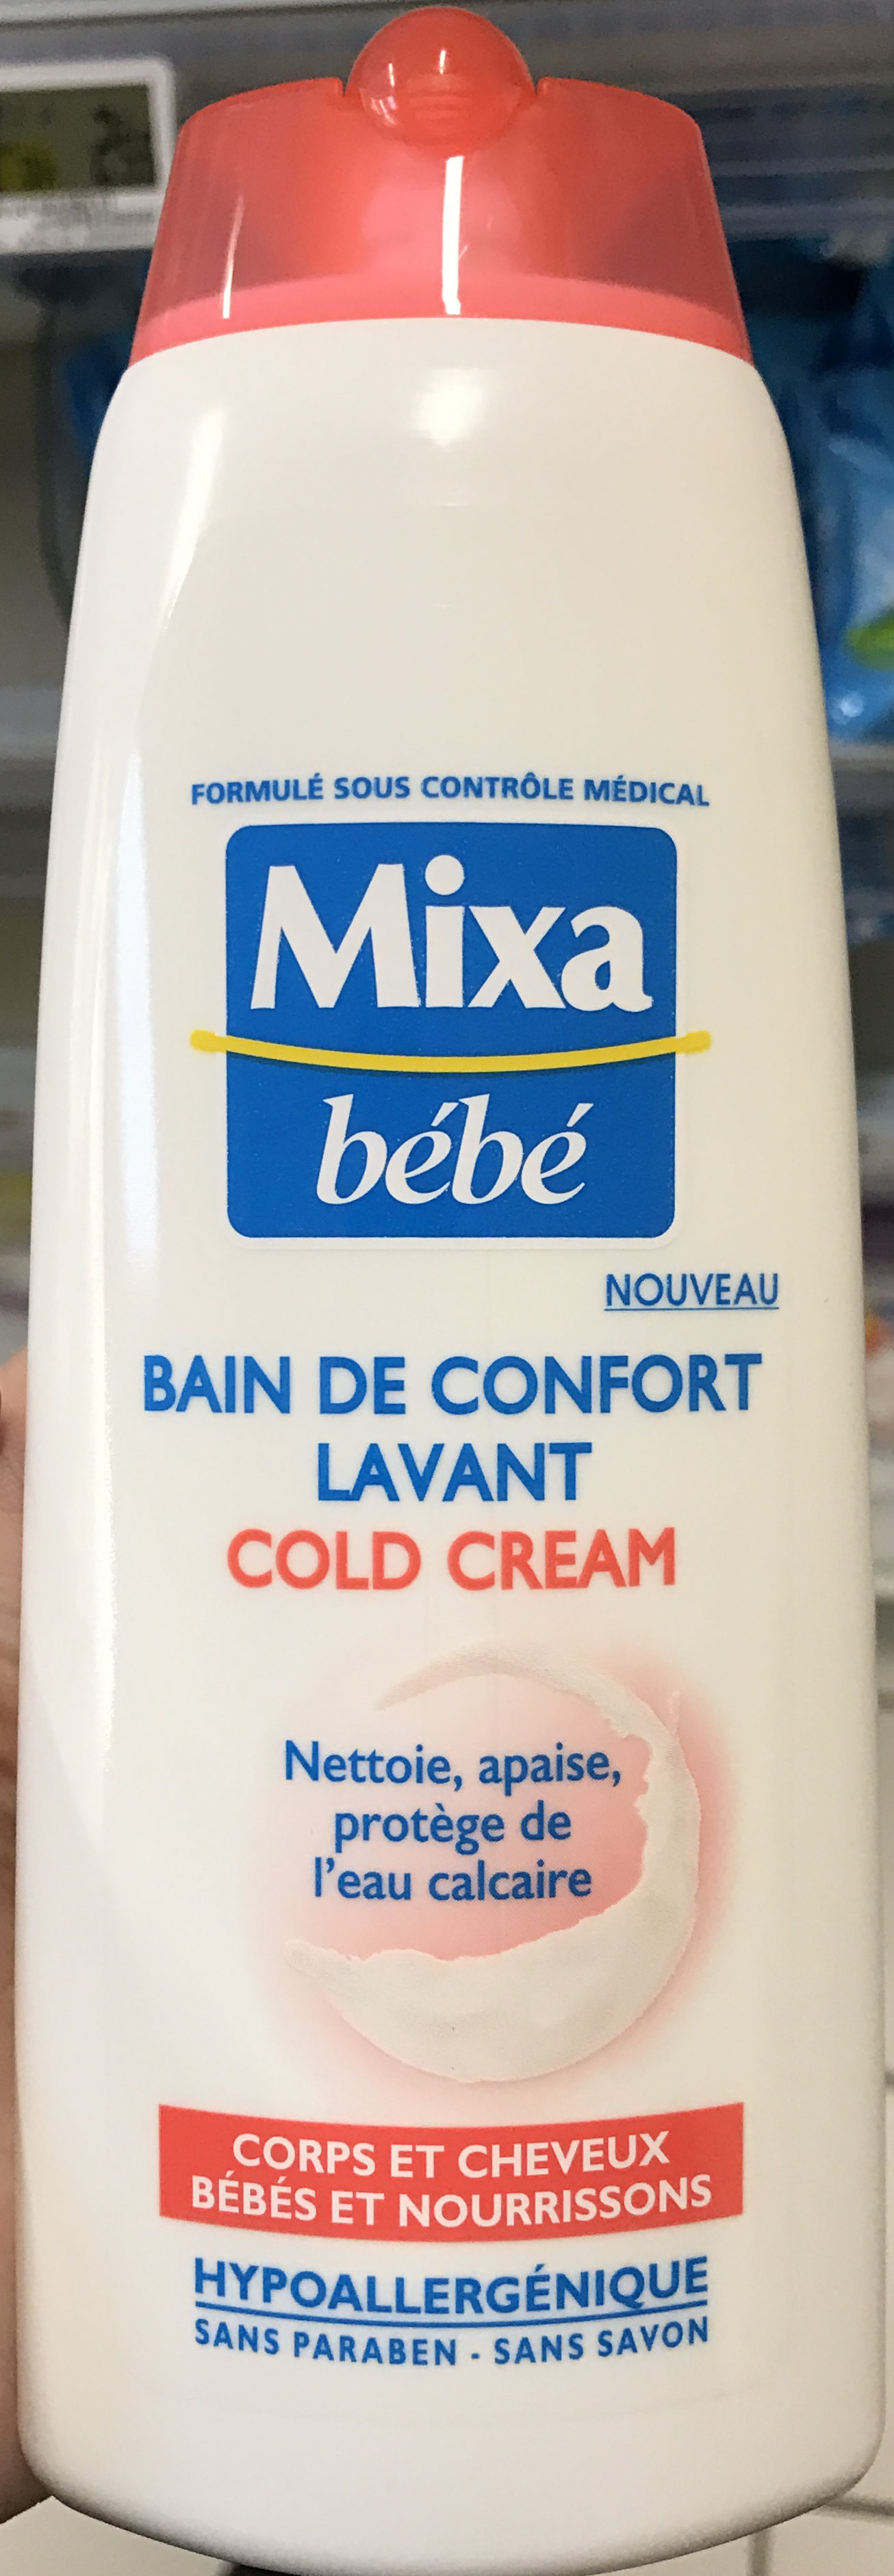 Bain de confort lavant Cold Cream - Produit - fr